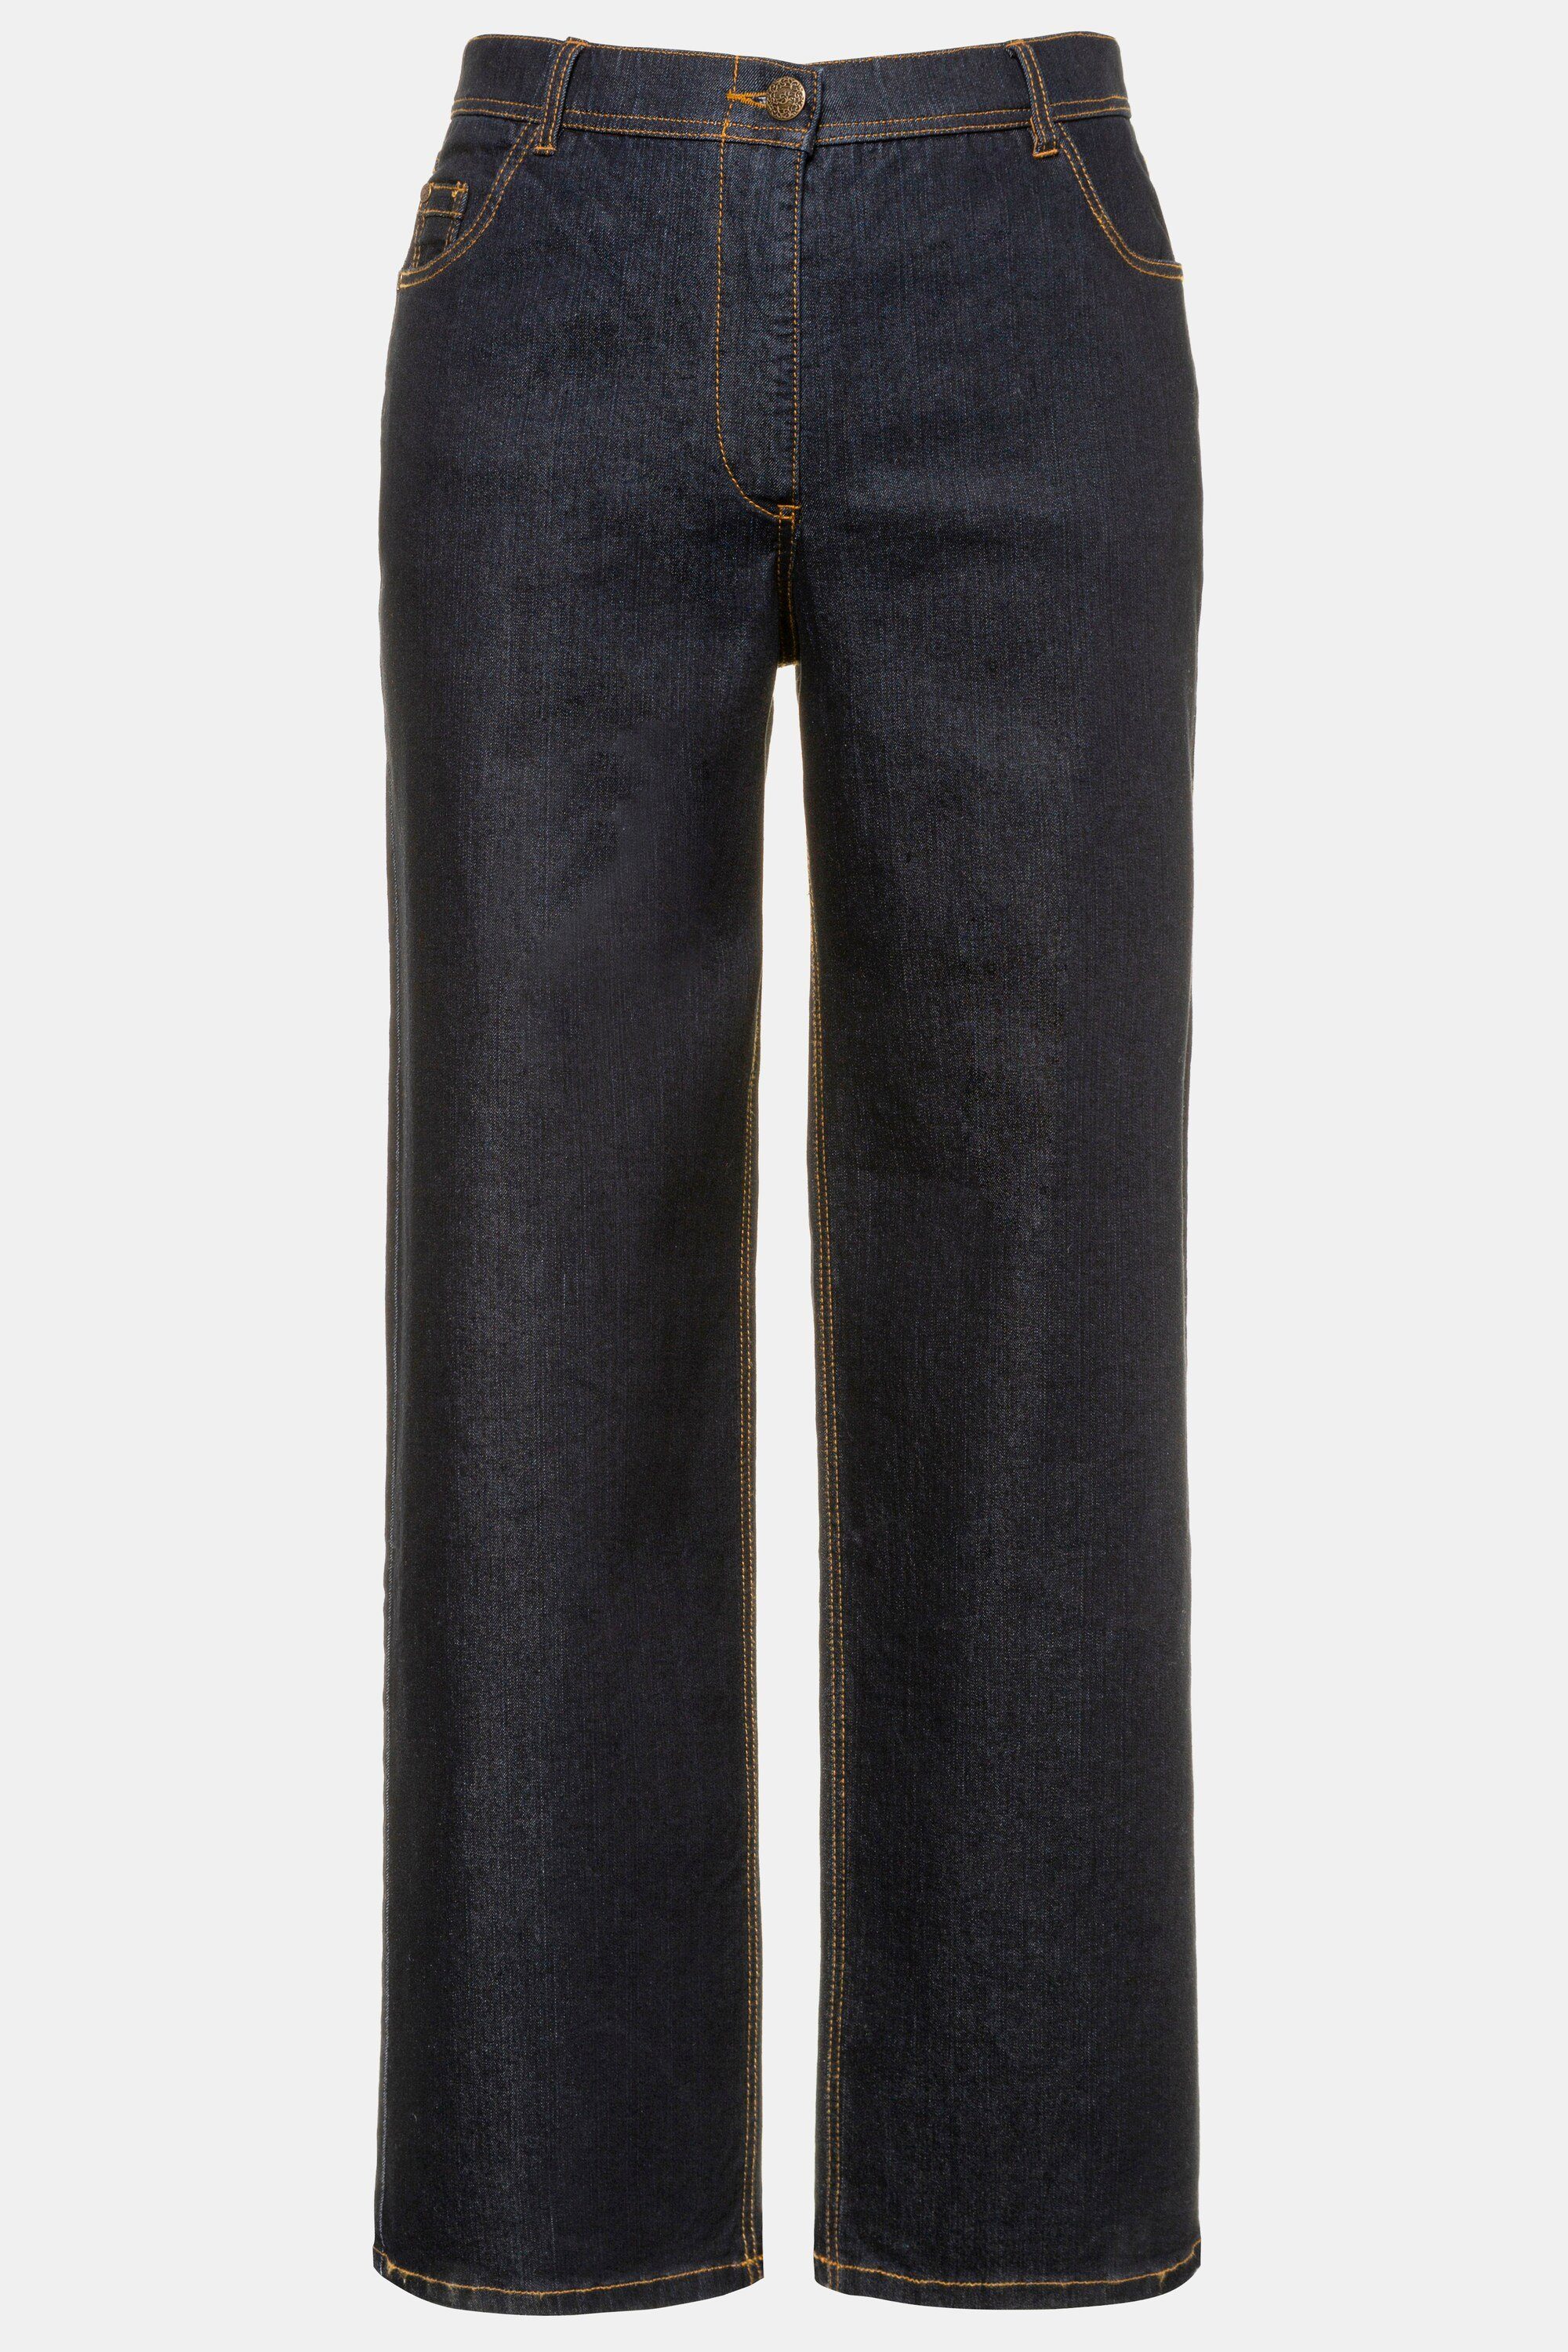 Jeans weites Funktionshose Bein 5-Pocket-Schnitt Mary Ulla dark blue Popken denim